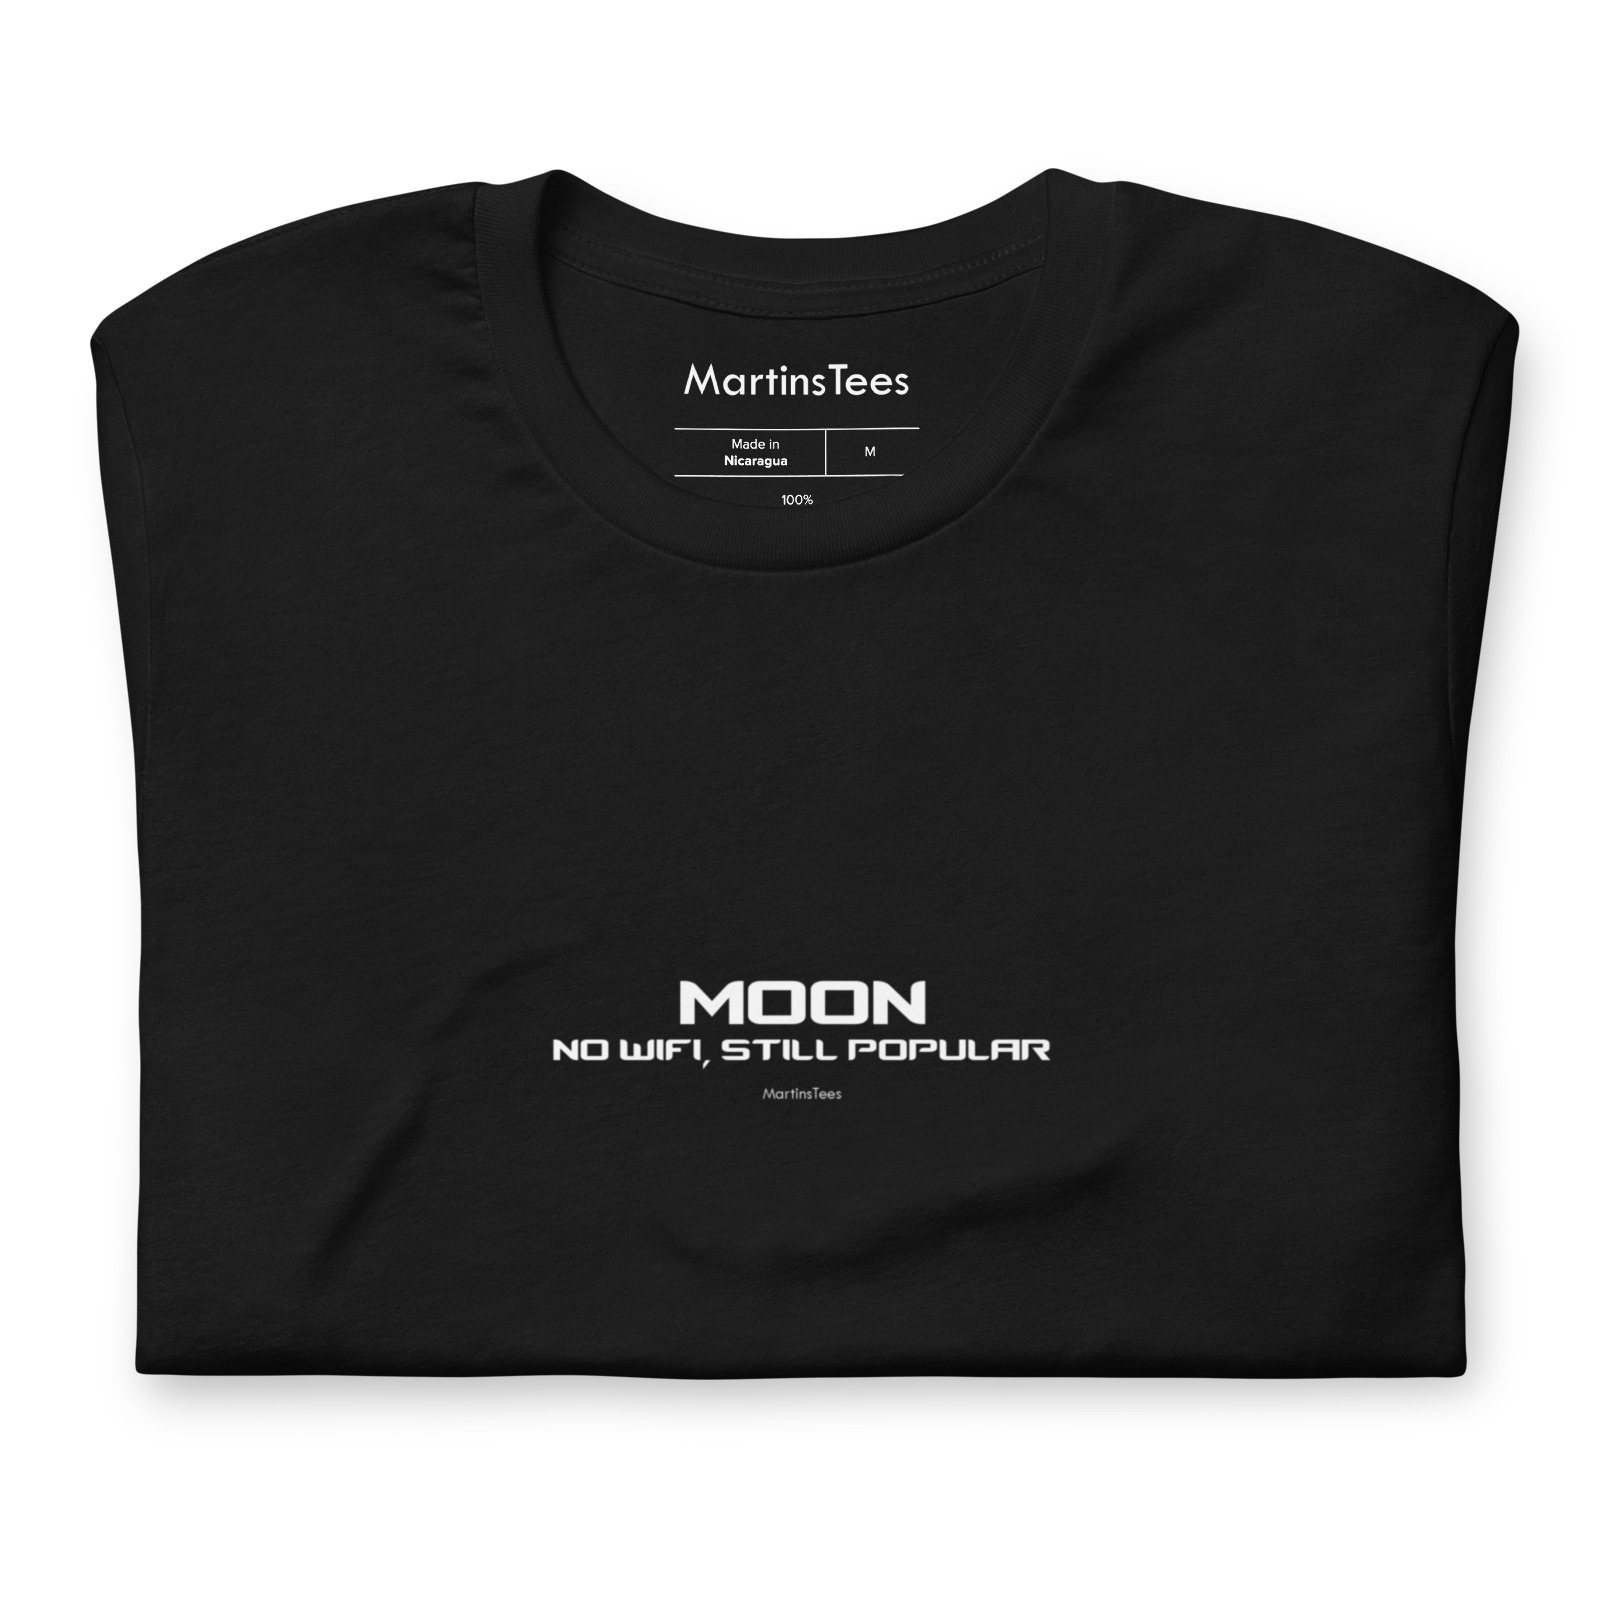 T-shirt: MOON - NO WIFI, STILL POPULAR